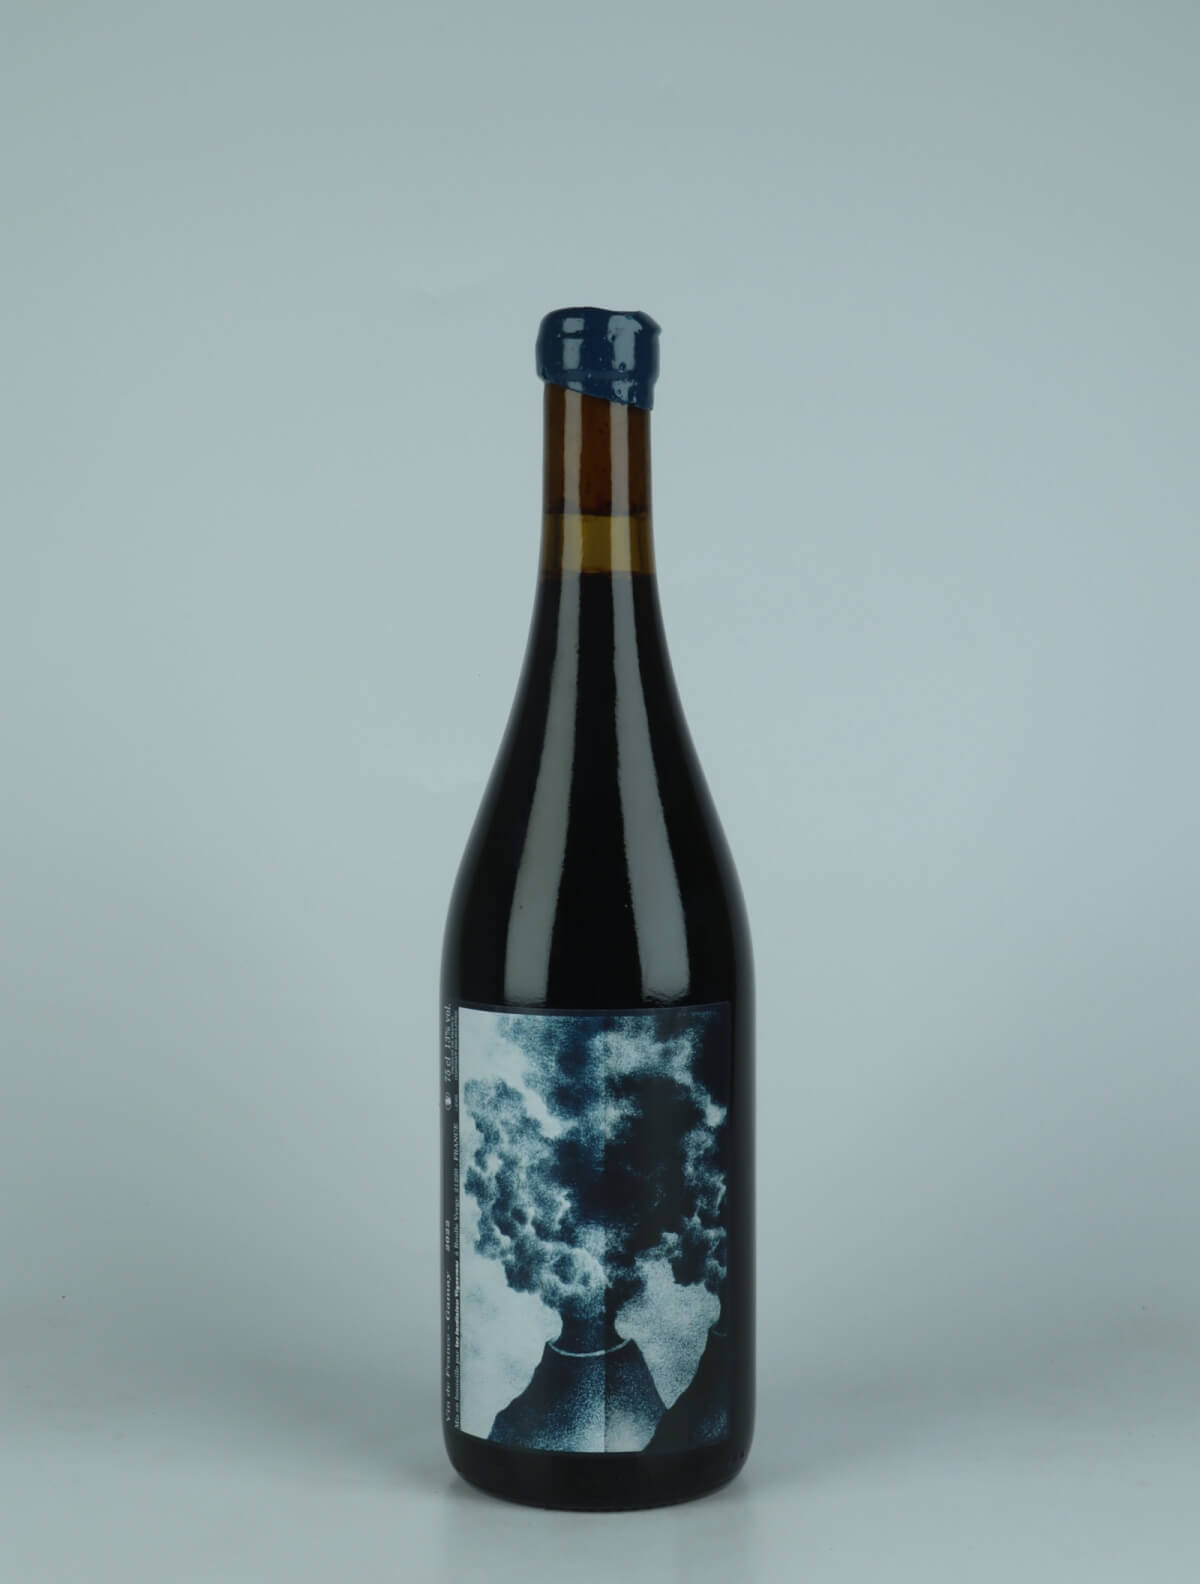 En flaske 2022 Gamay Rødvin fra Les Jardiniers Vignerons, Beaujolais i Frankrig